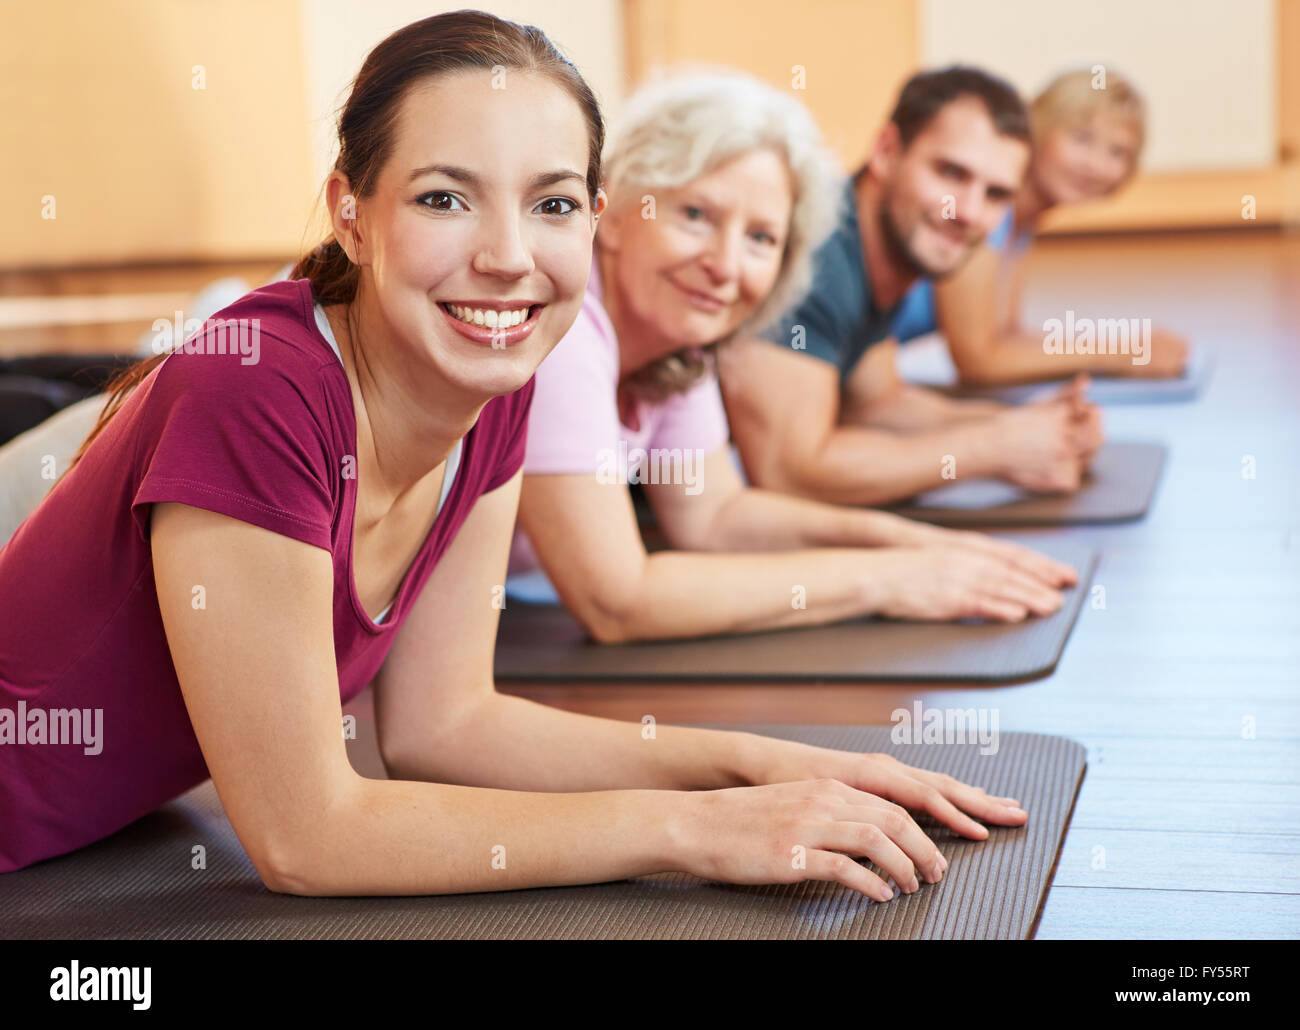 Gruppo sorridente esercitare insieme in un centro fitness Foto Stock